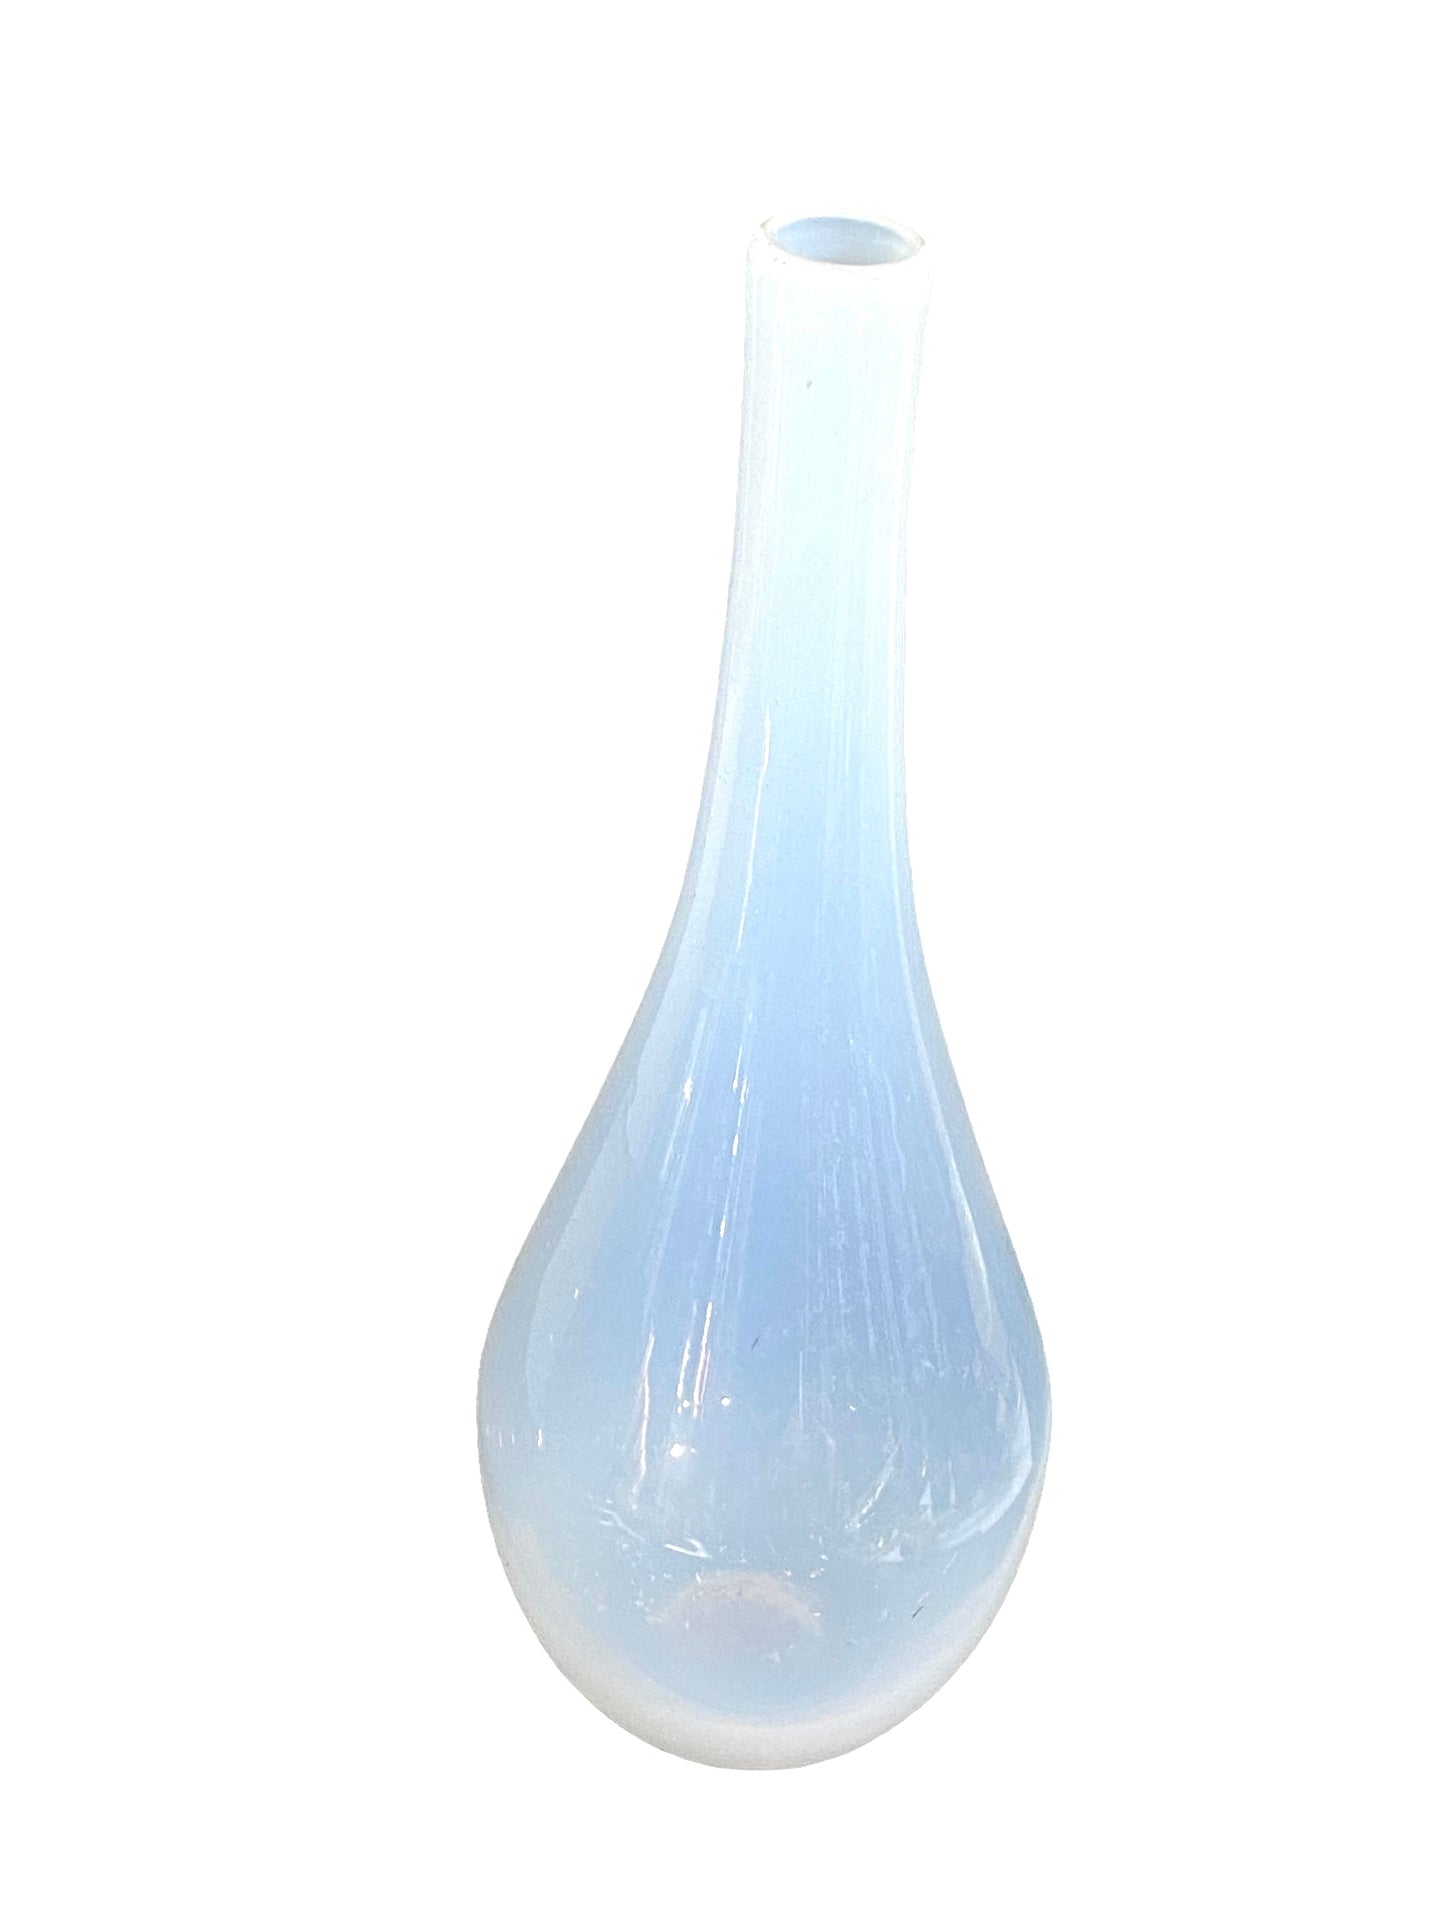 #4617 Onion shape White Glass Vase 19.5" H